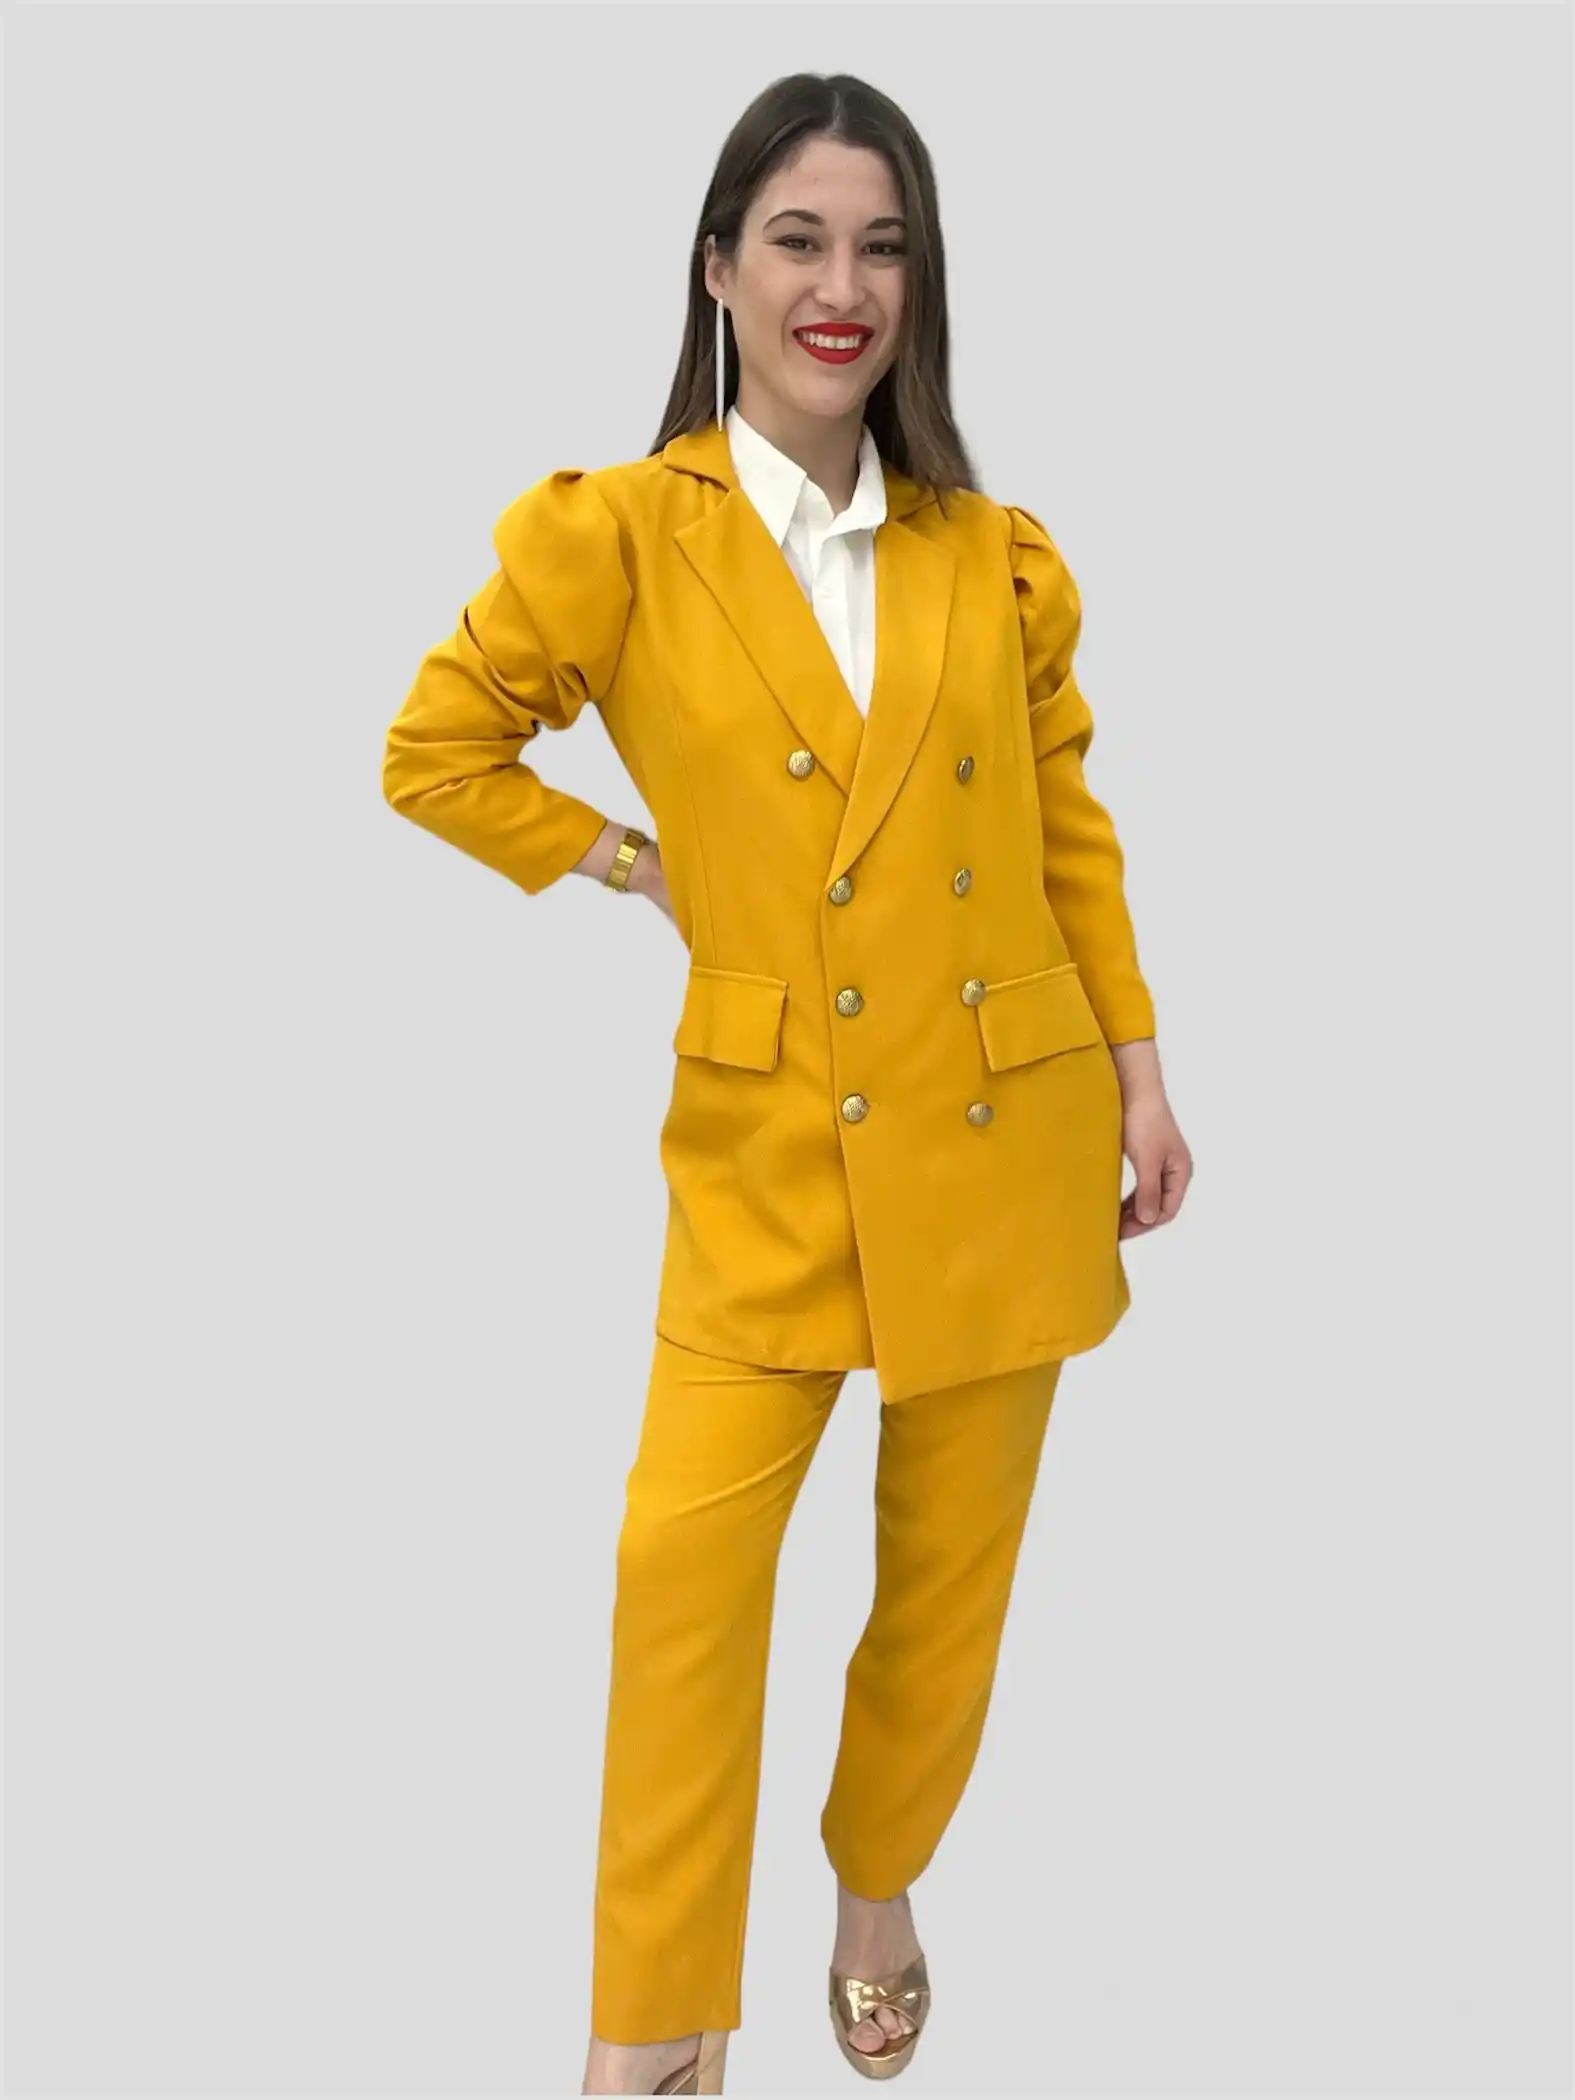 Γυναικείο Σετ Κοστούμι Κίτρινο